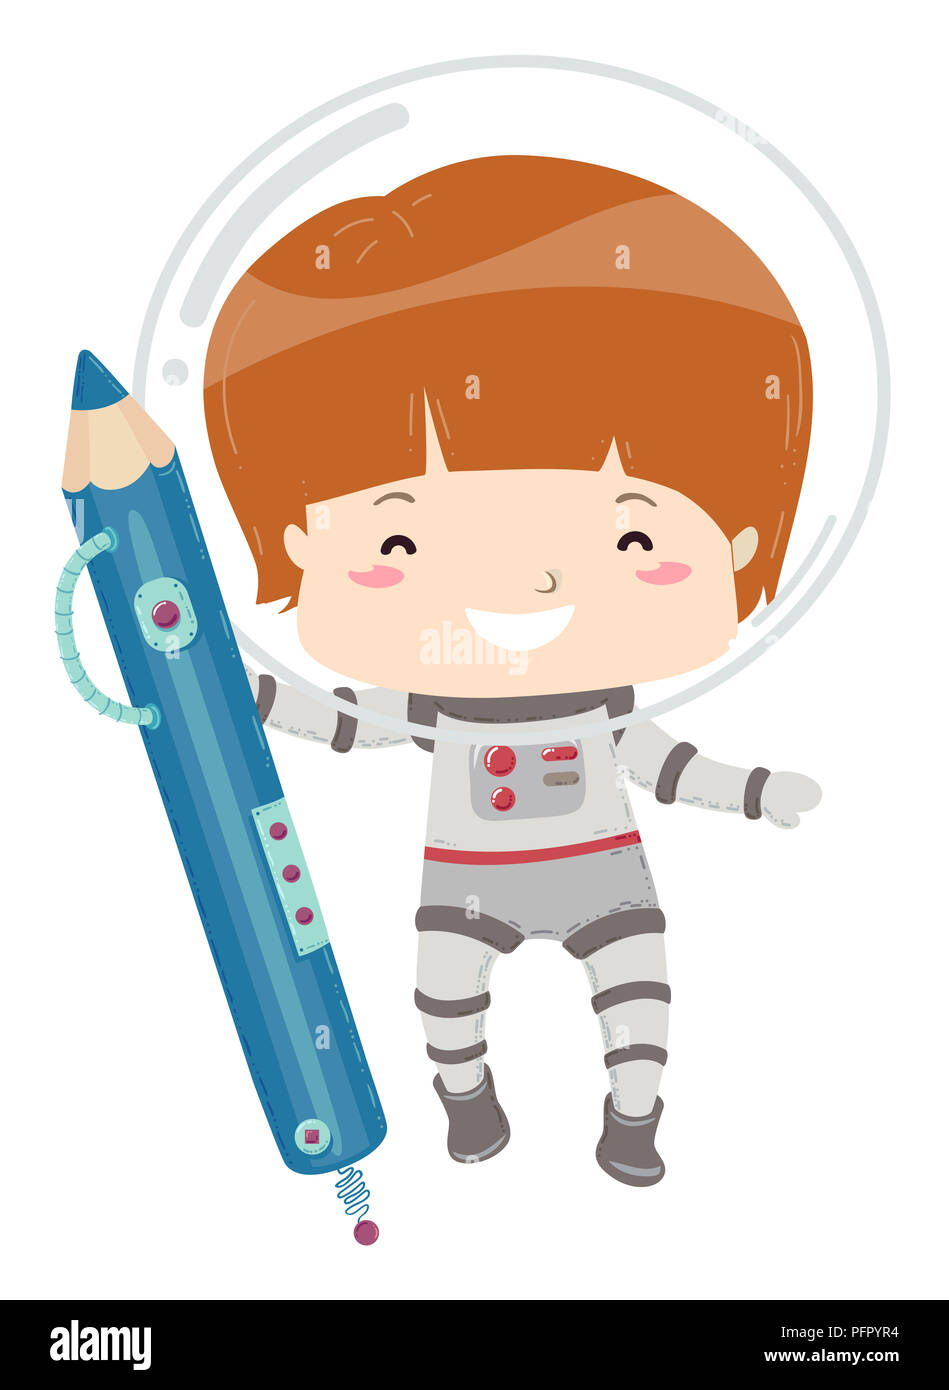 Ilustración de un niño chico en traje de astronauta sosteniendo un lápiz  futurista azul Fotografía de stock - Alamy